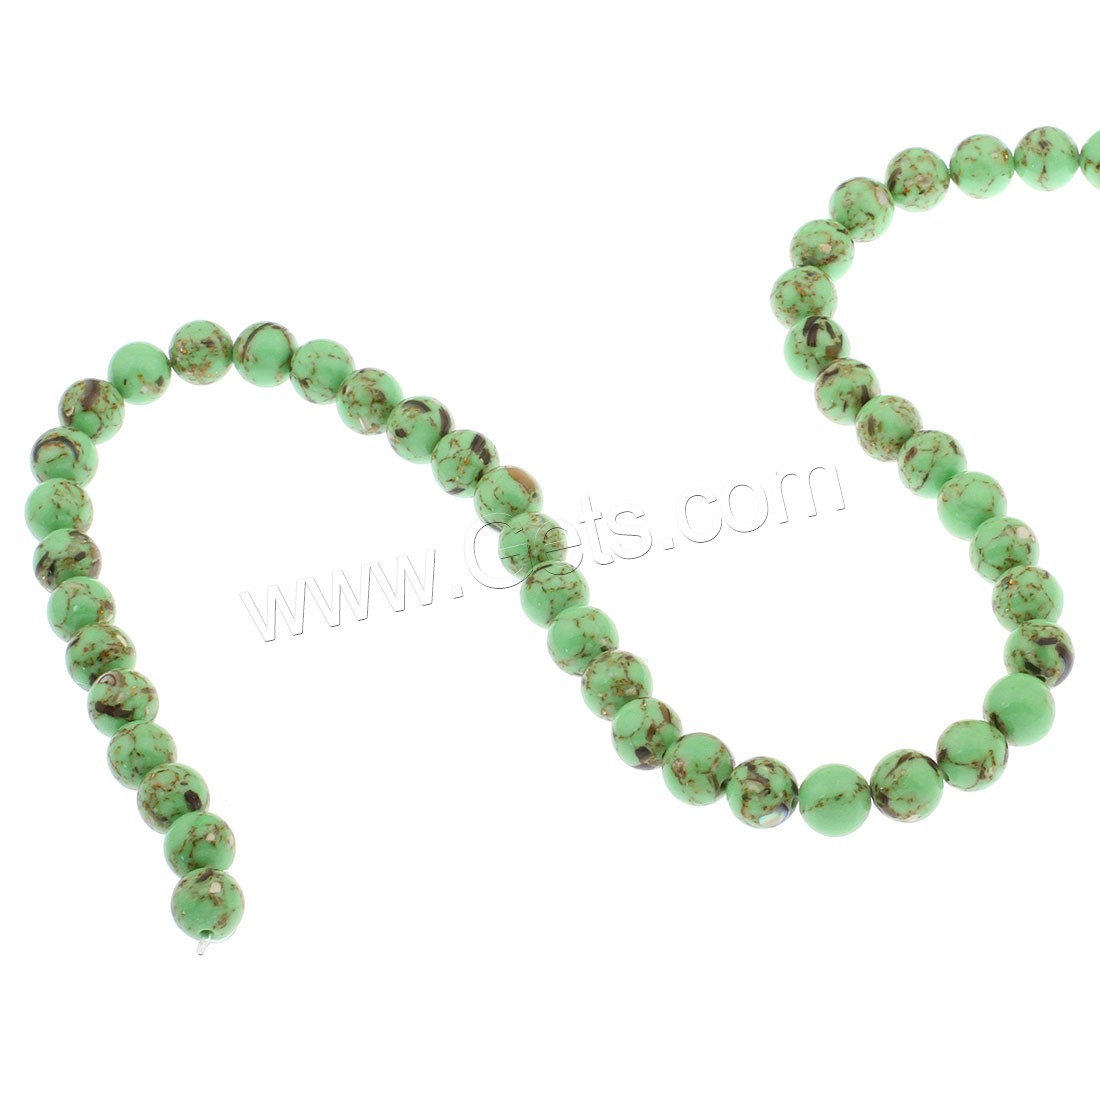 Synthetische Türkis Perlen, rund, verschiedene Größen vorhanden, keine, Bohrung:ca. 1mm, verkauft von Tasche